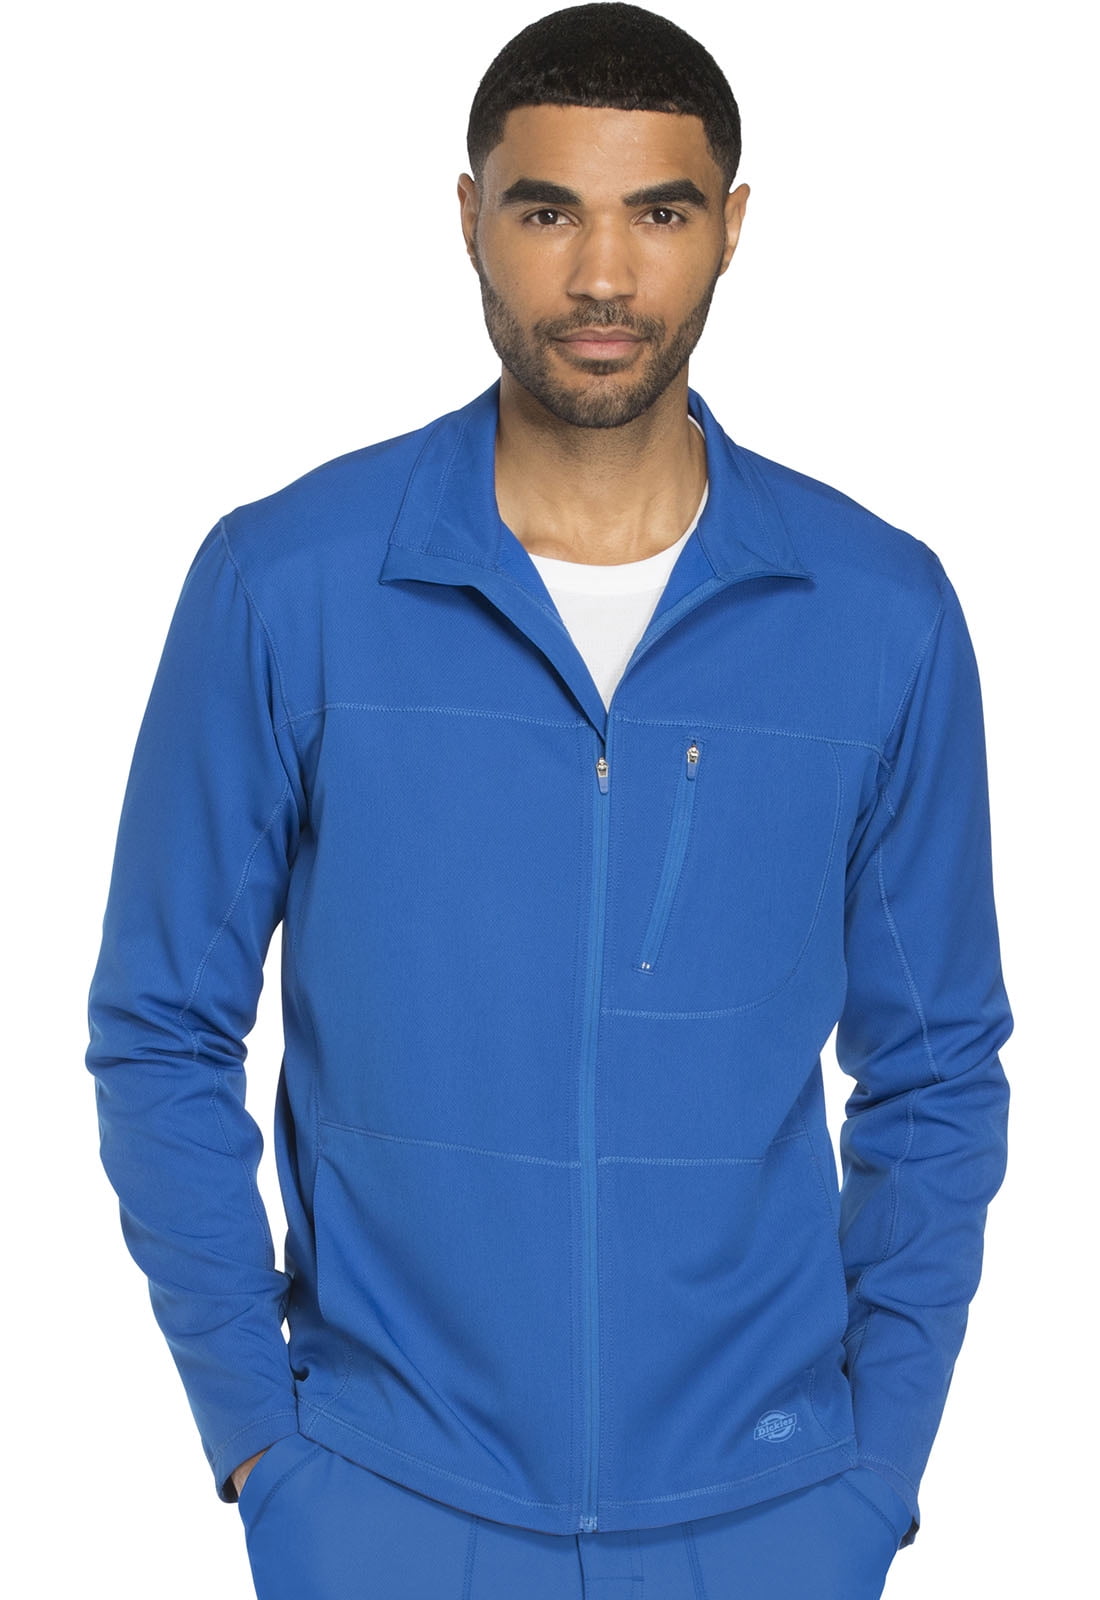 Dickies Dynamix Scrubs Warm Up Jacket for Men Zip Front DK310 - Walmart.com